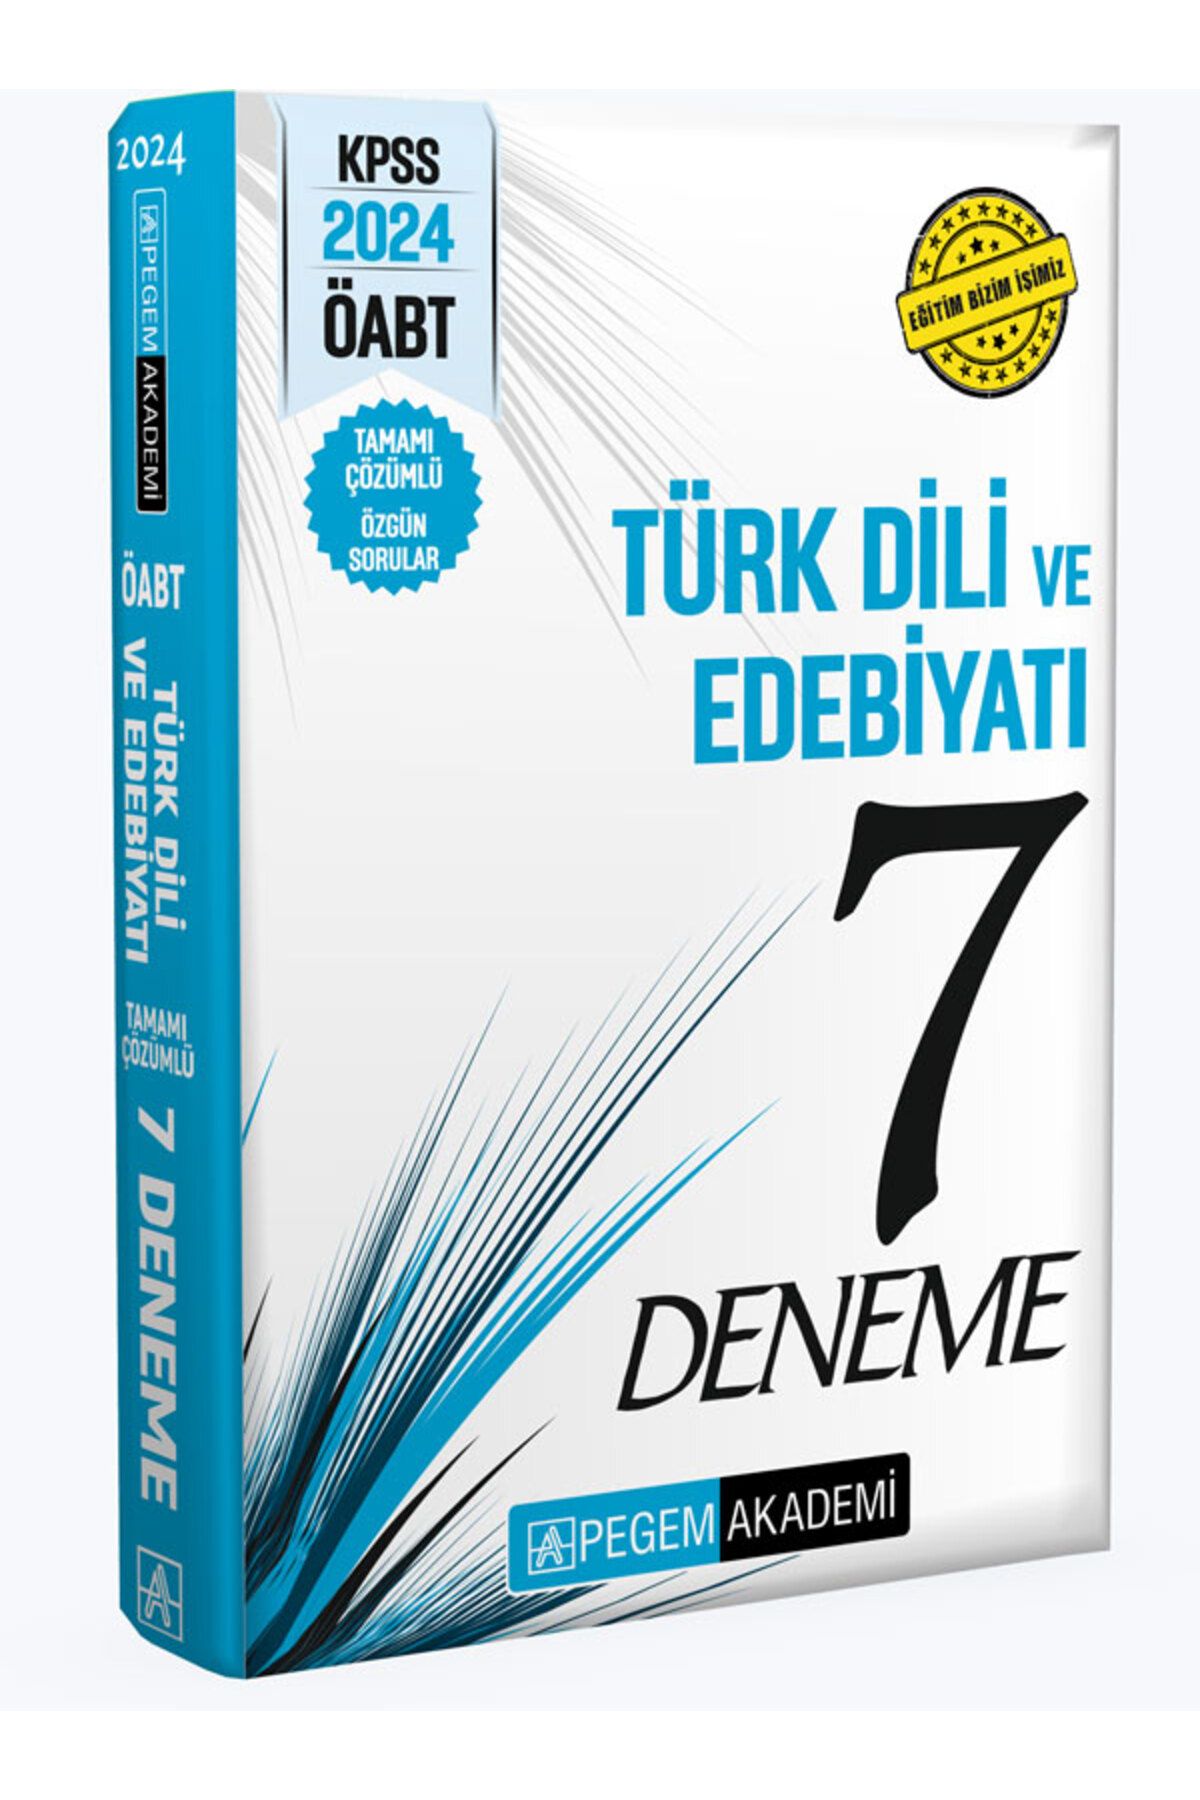 Pegem Akademi Yayıncılık 2024 KPSS ÖABT Türkdili ve Edebiyatı Öğretmenliği Tamamı Çözümlü 7 Deneme